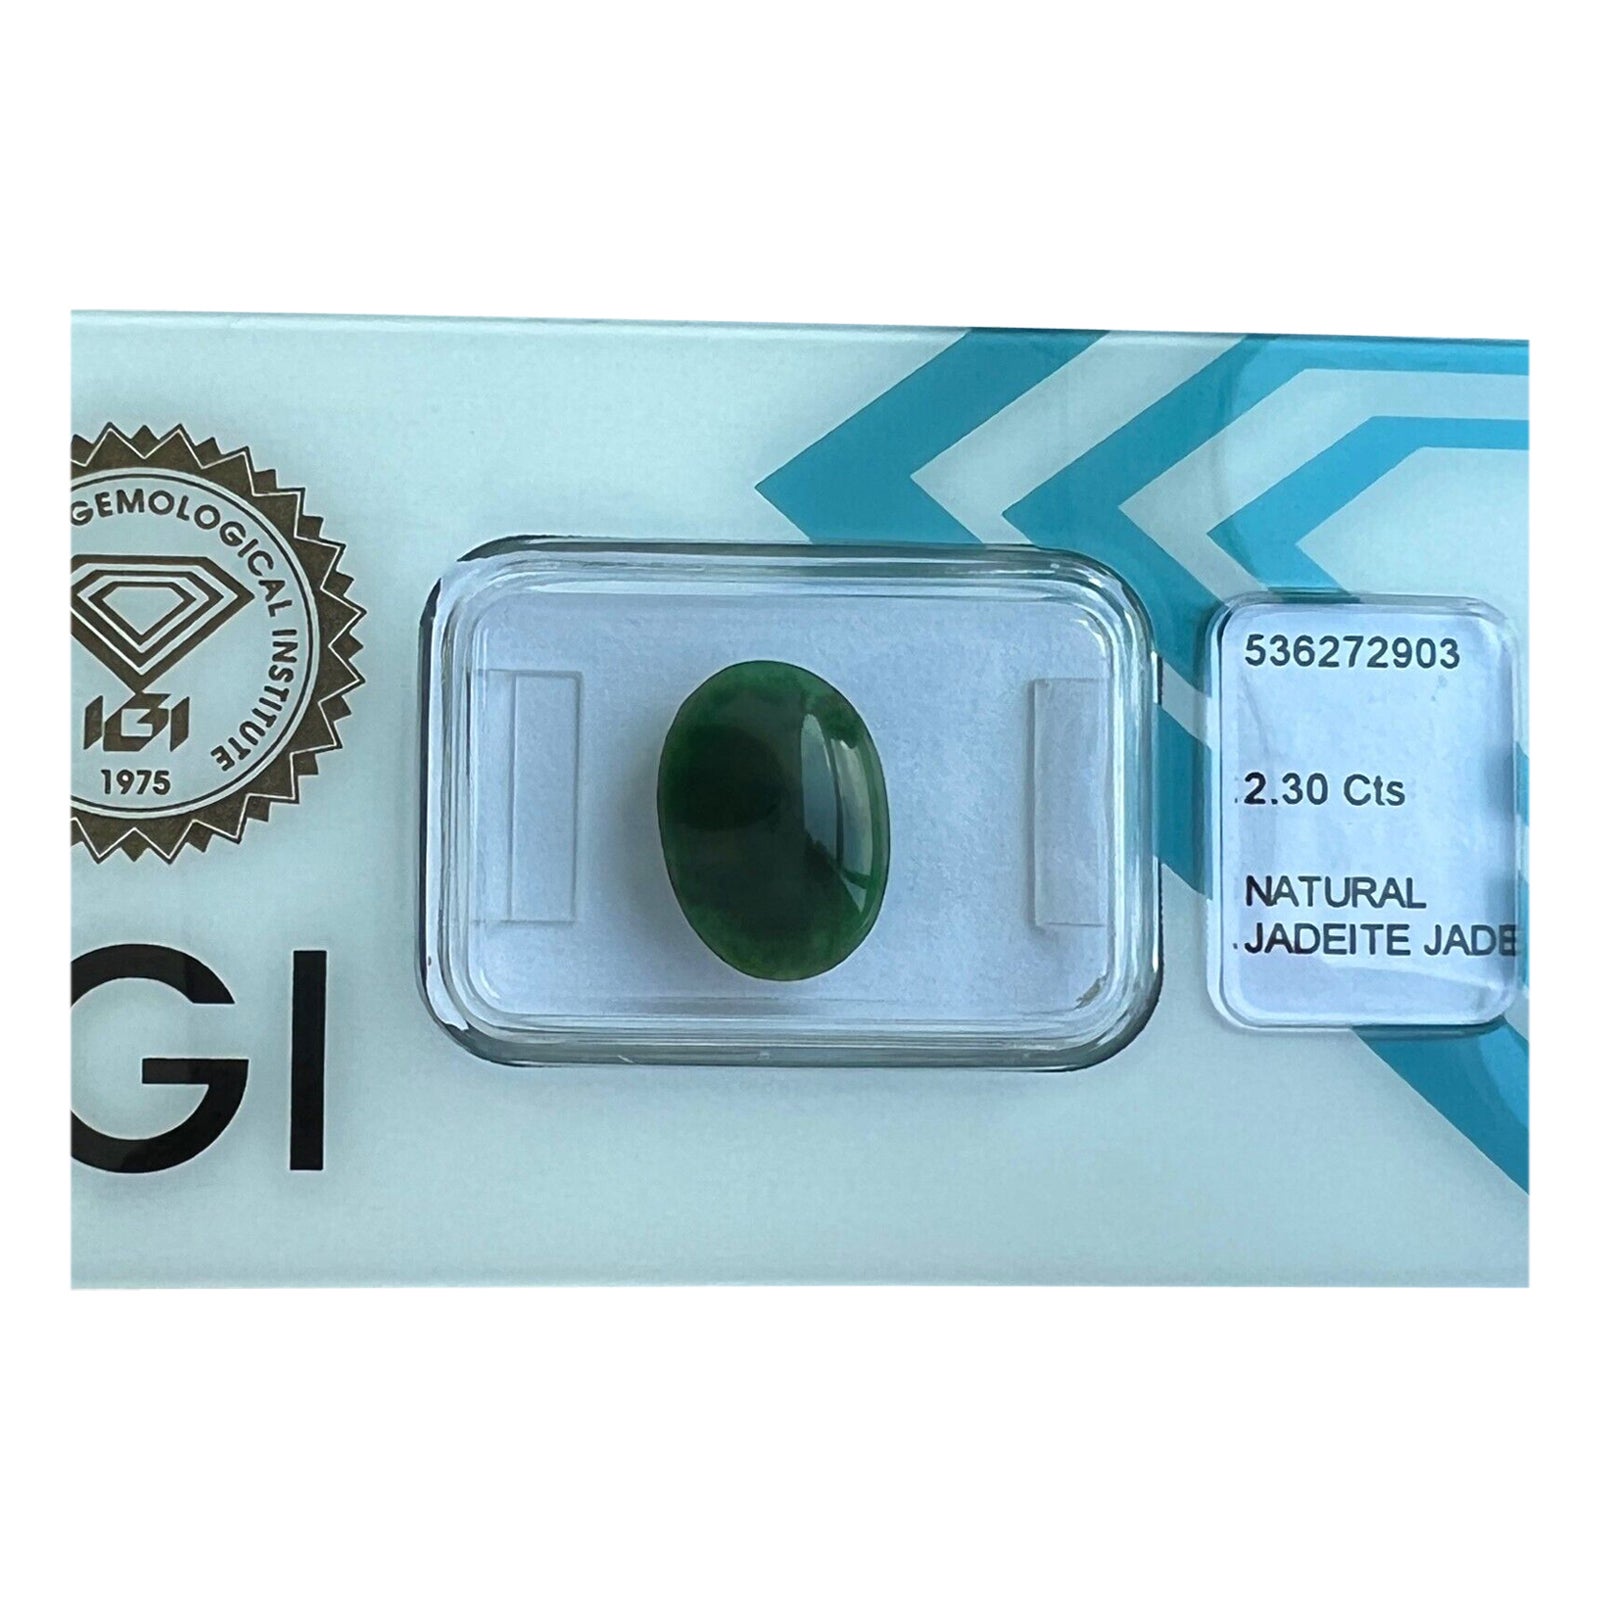 Rare 2.30Ct IGI Certified Jadeite Jade ‘A’ Grade Deep Green Oval Cabochon Gem